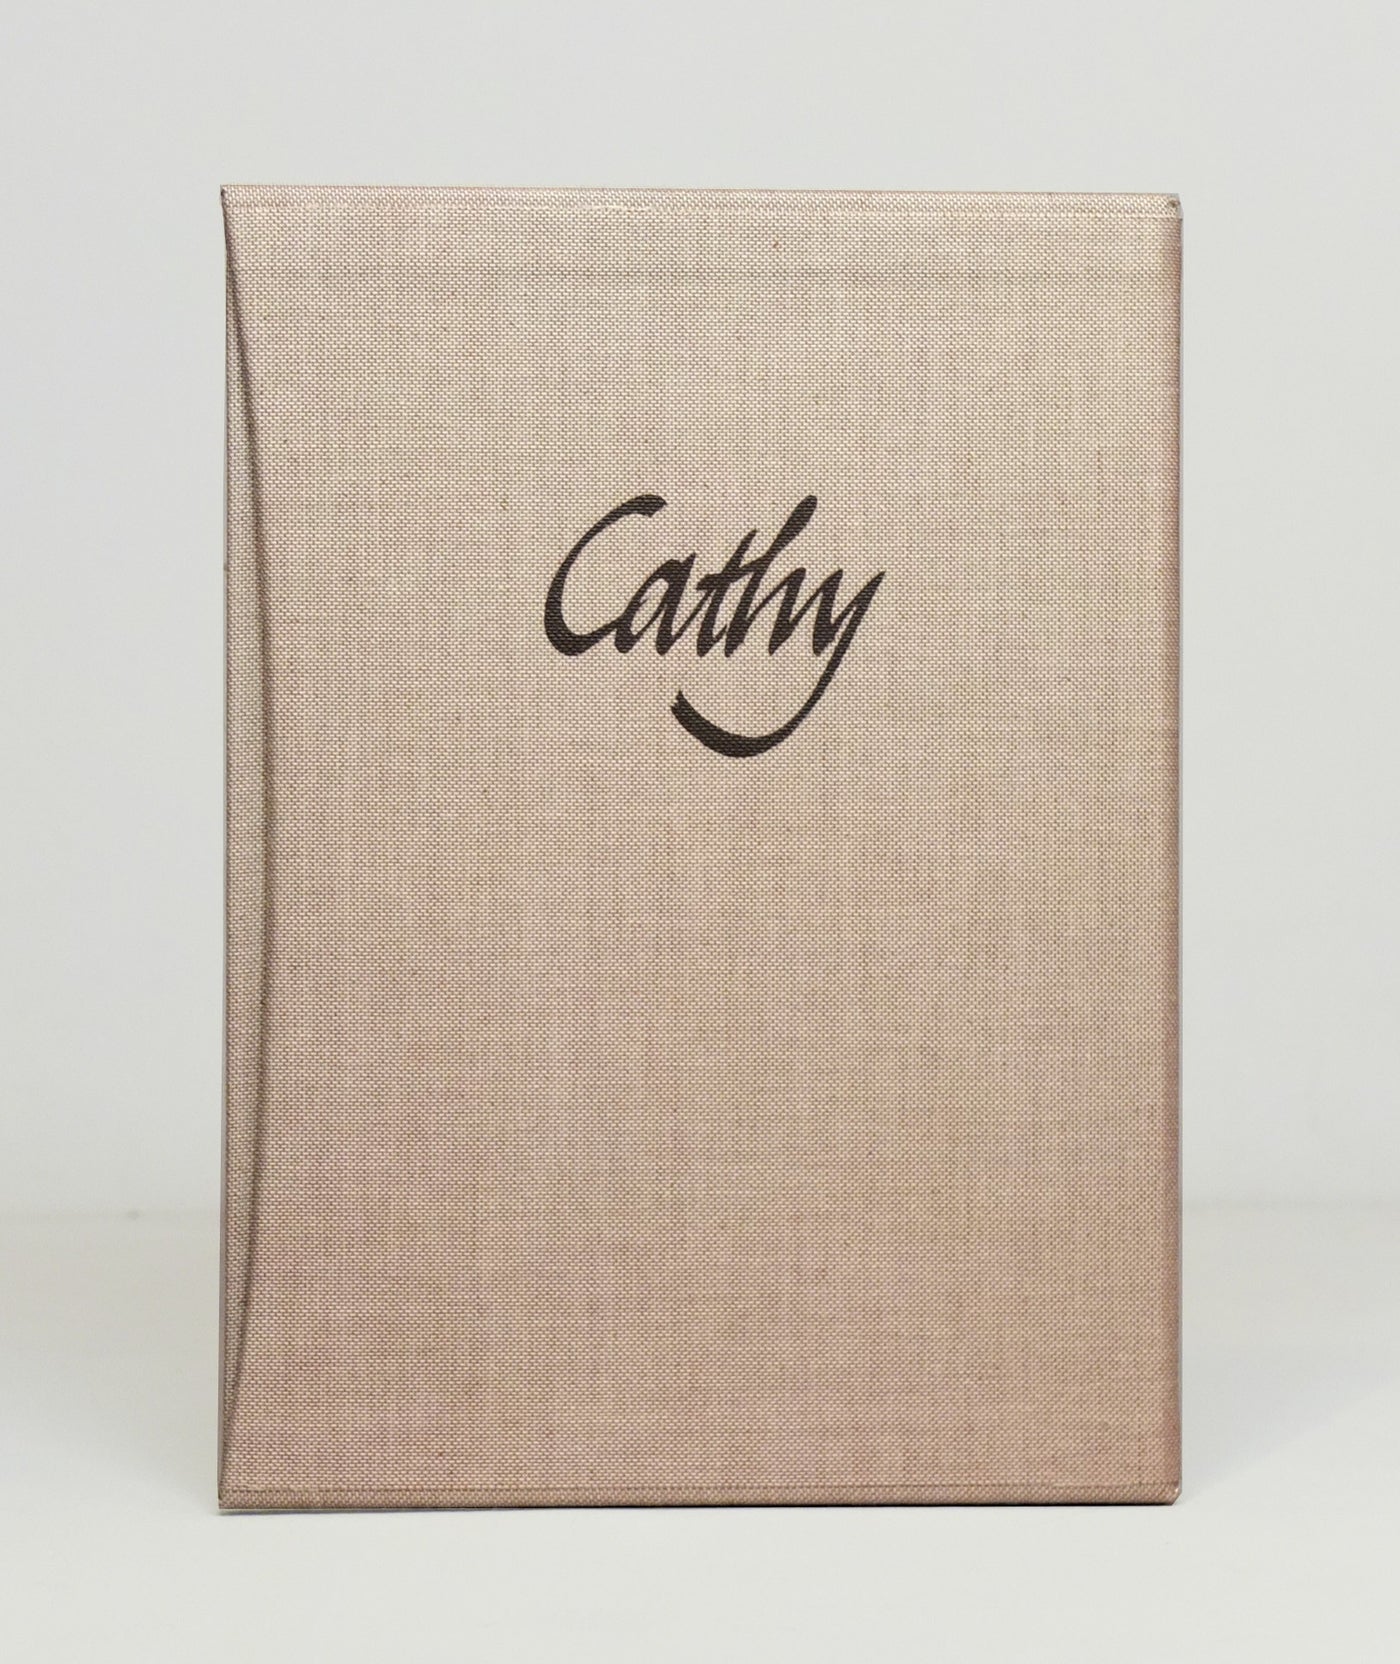 Cathy by John Carder Bush}